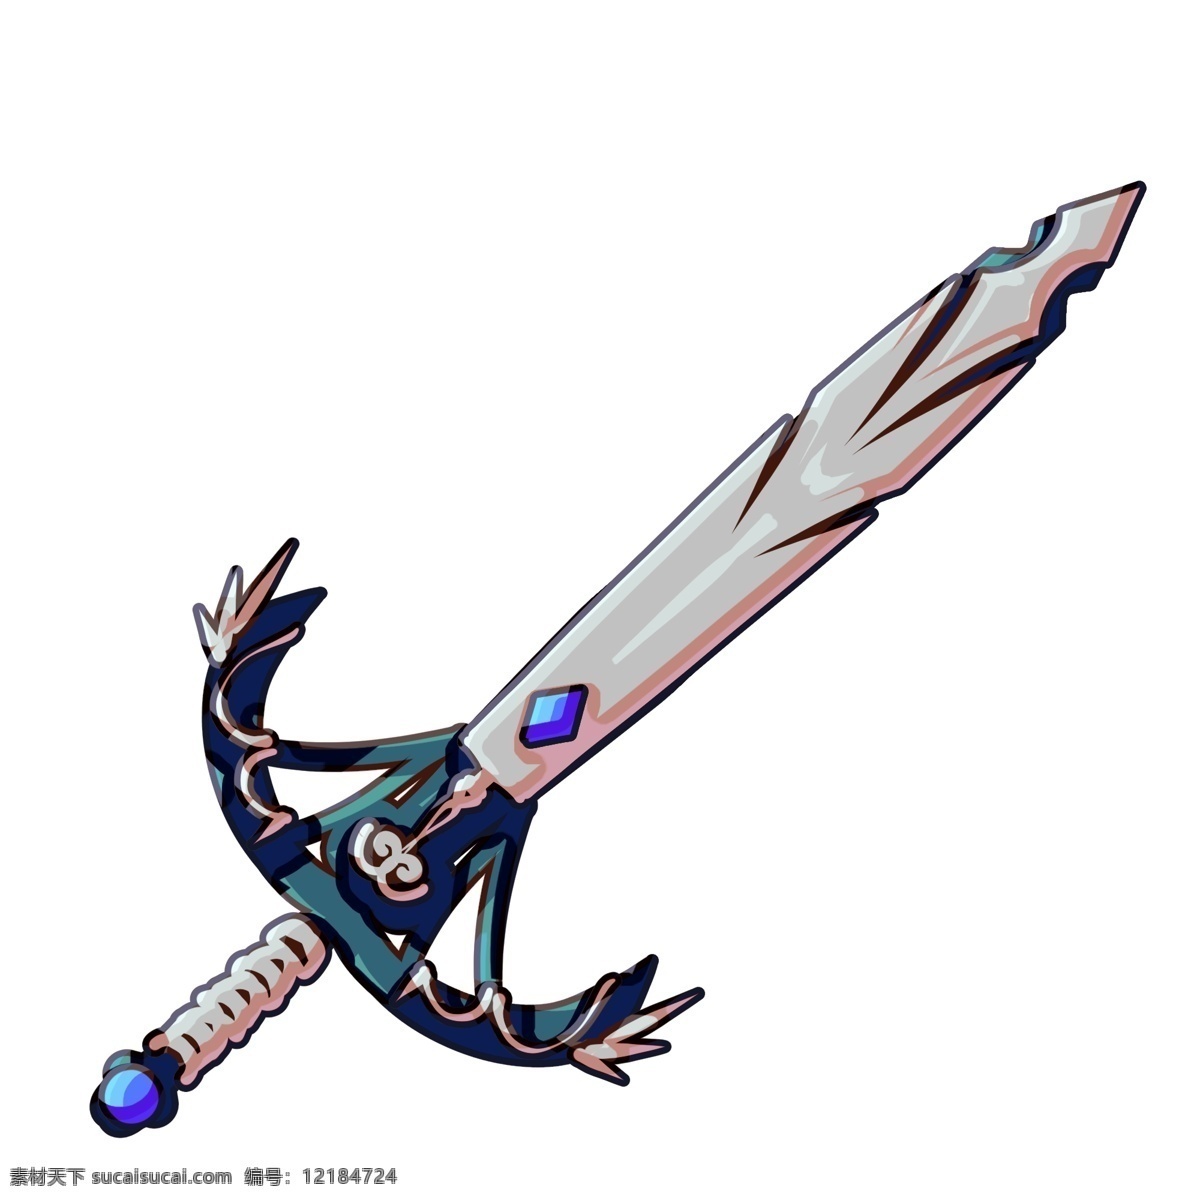 蓝色 宝剑 装饰 插画 蓝色的宝剑 漂亮的宝剑 创意宝剑 立体宝剑 精美宝剑 卡通宝剑 古风宝剑